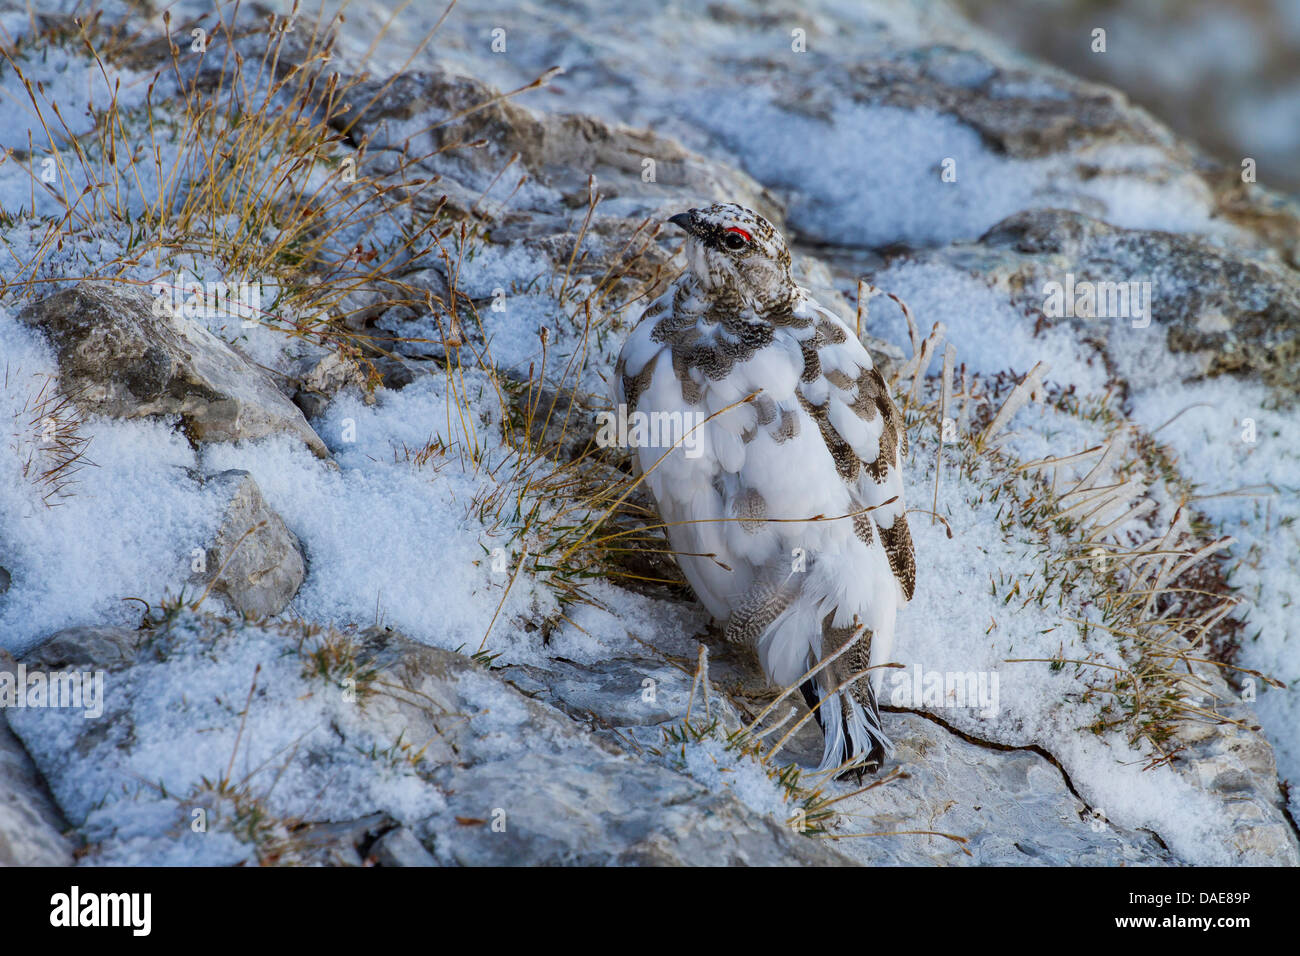 Le lagopède alpin, le poulet Neige (Lagopus mutus), homme assis sur un rocher dans une averse de neige, en plumage de transition, la Suisse, l'Alpstein, Saentis Banque D'Images